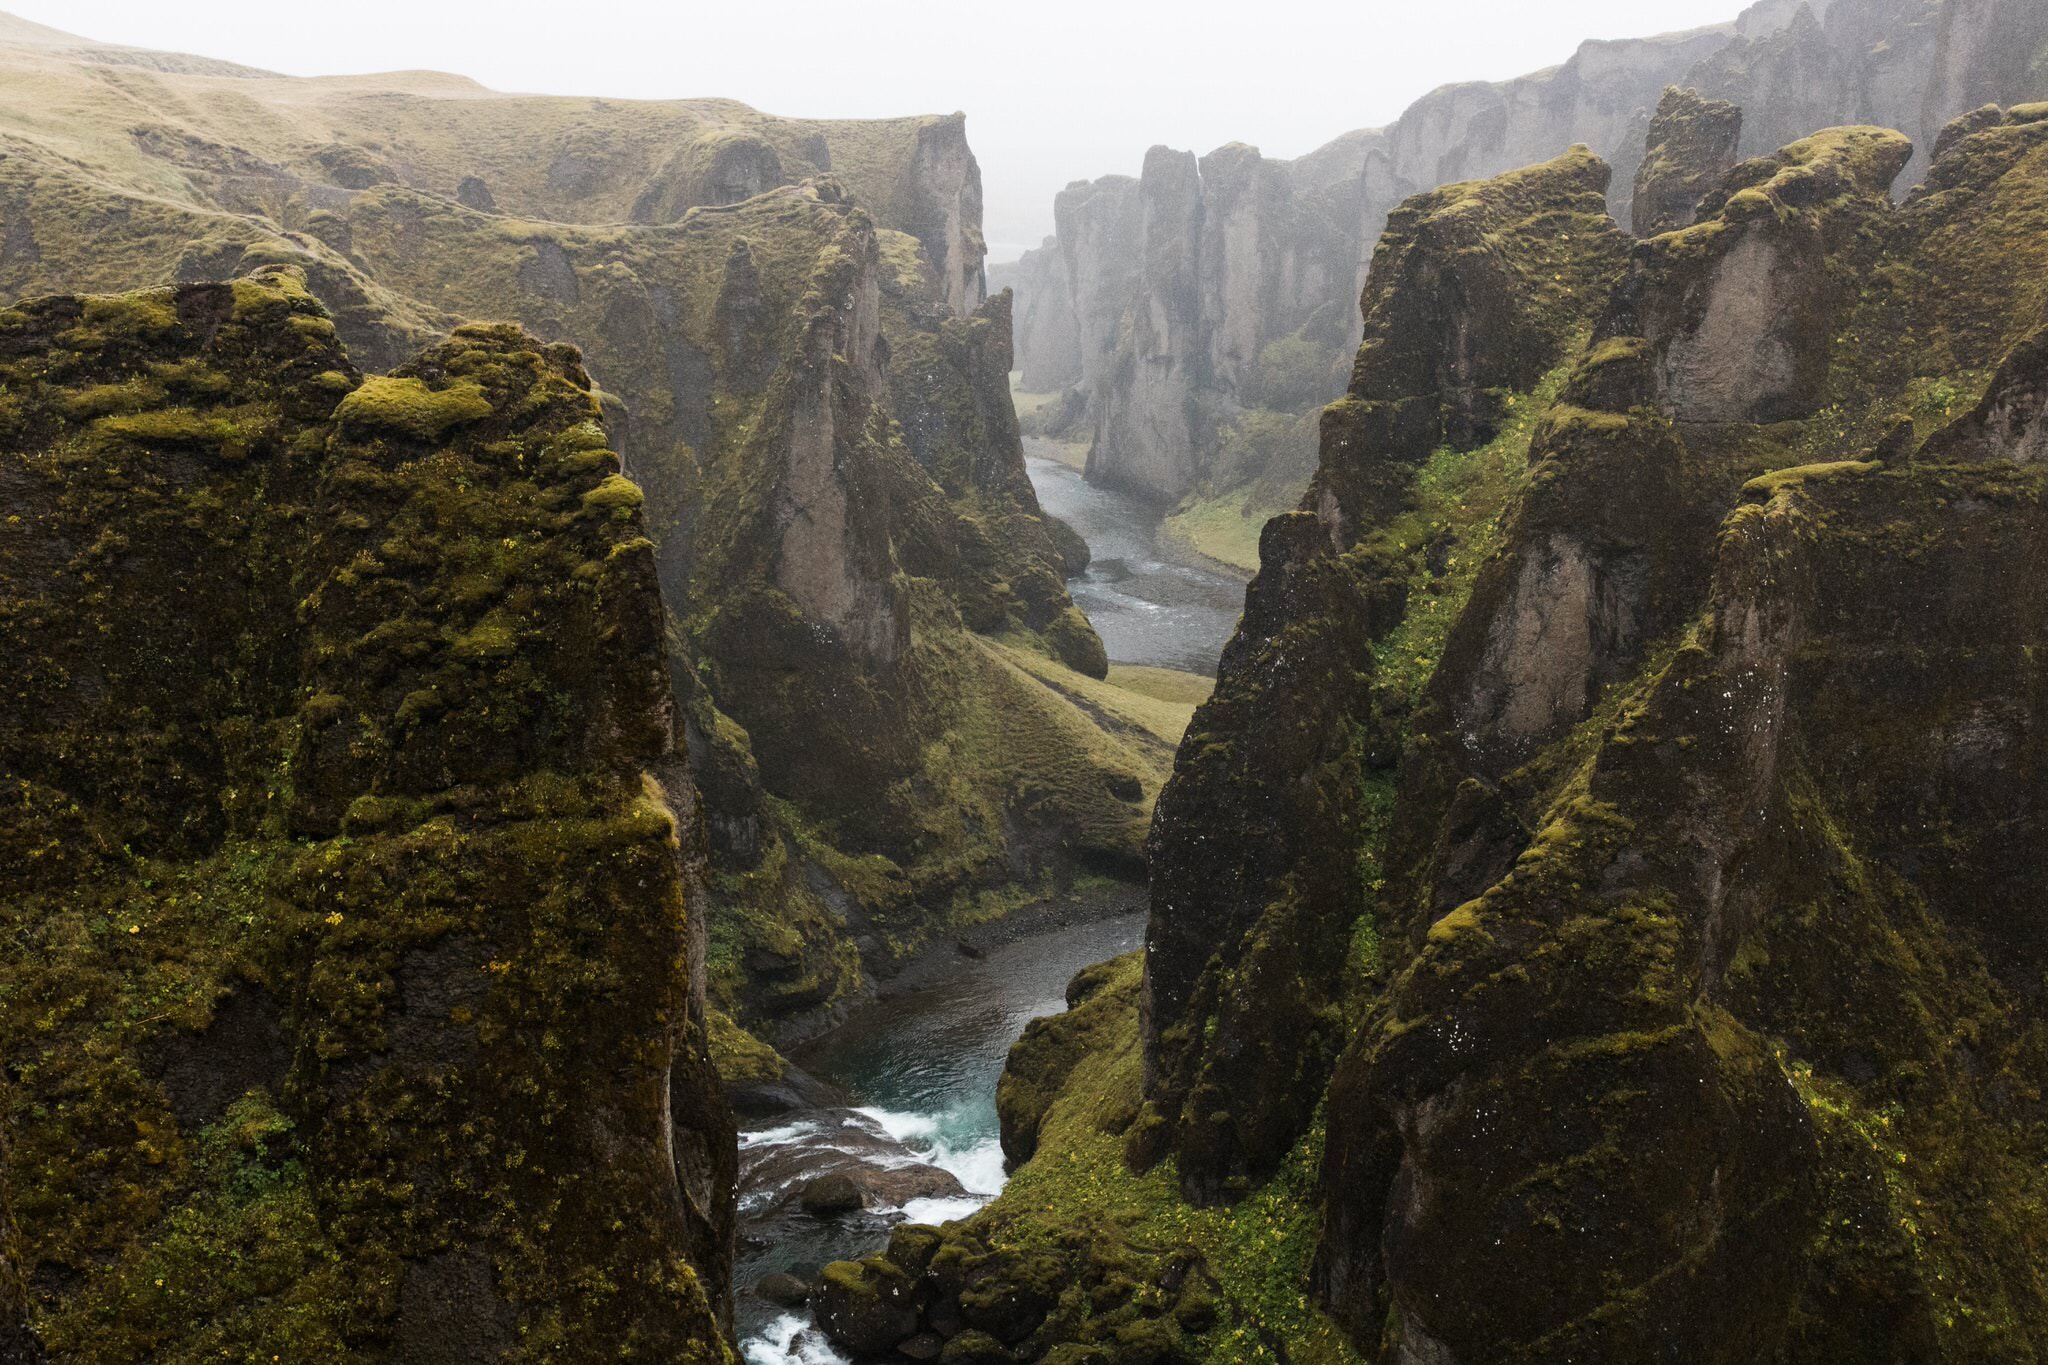  Hẻm núi Fjaðrárgljúfur, chỗ này ngày xưa là góc bí mật chứ giờ ai cũng biết rồi&nbsp;:))  Chỉ có một điều không đổi: Tên các địa danh của Iceland cái nào cũng đọc trẹo mồm! 